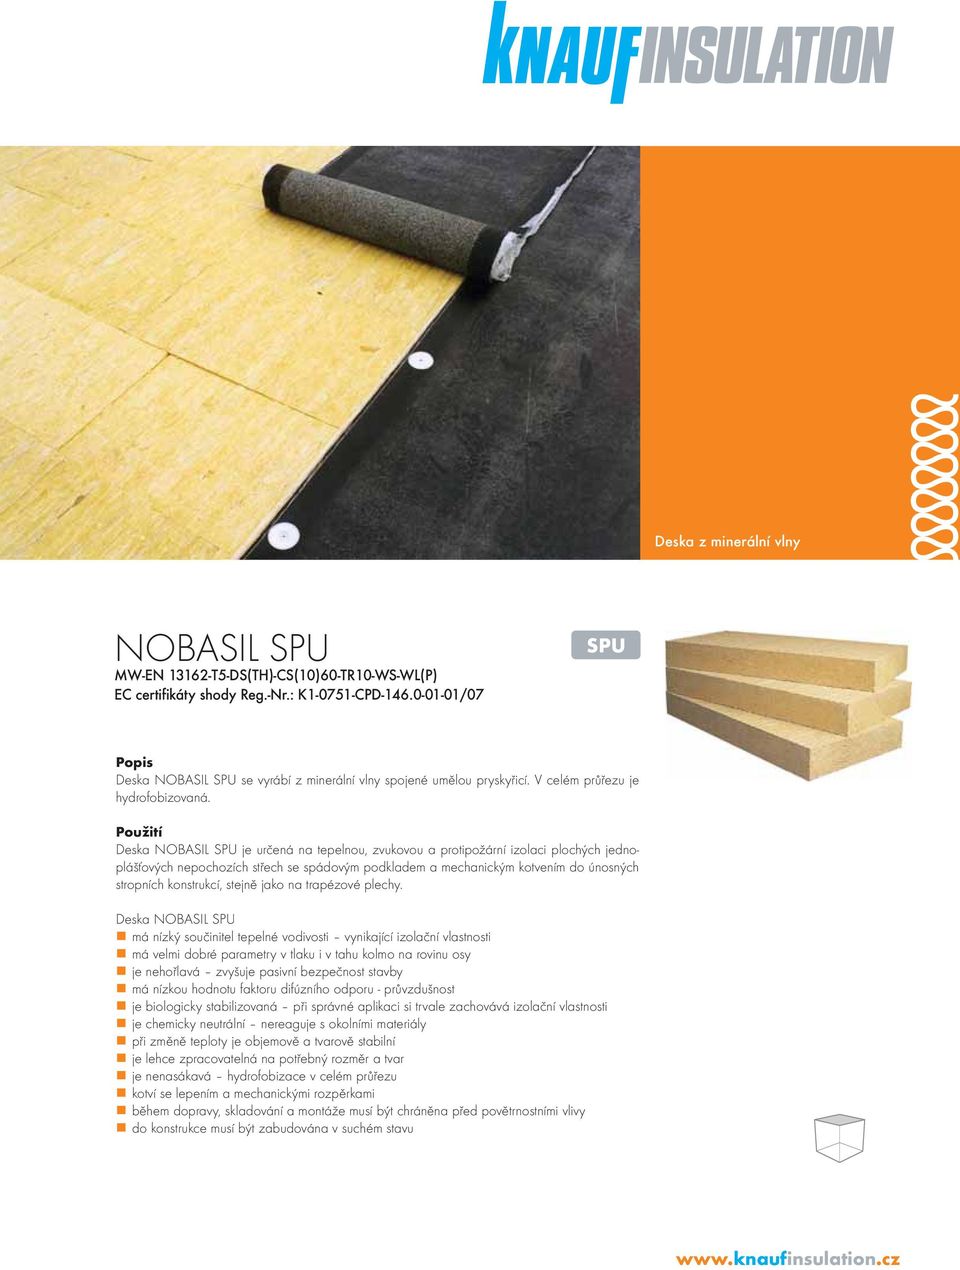 Použití Deska NOBASIL SPU je určená na tepelnou, zvukovou a protipožární izolaci plochých jednoplášťových nepochozích střech se spádovým podkladem a mechanickým kotvením do únosných stropních